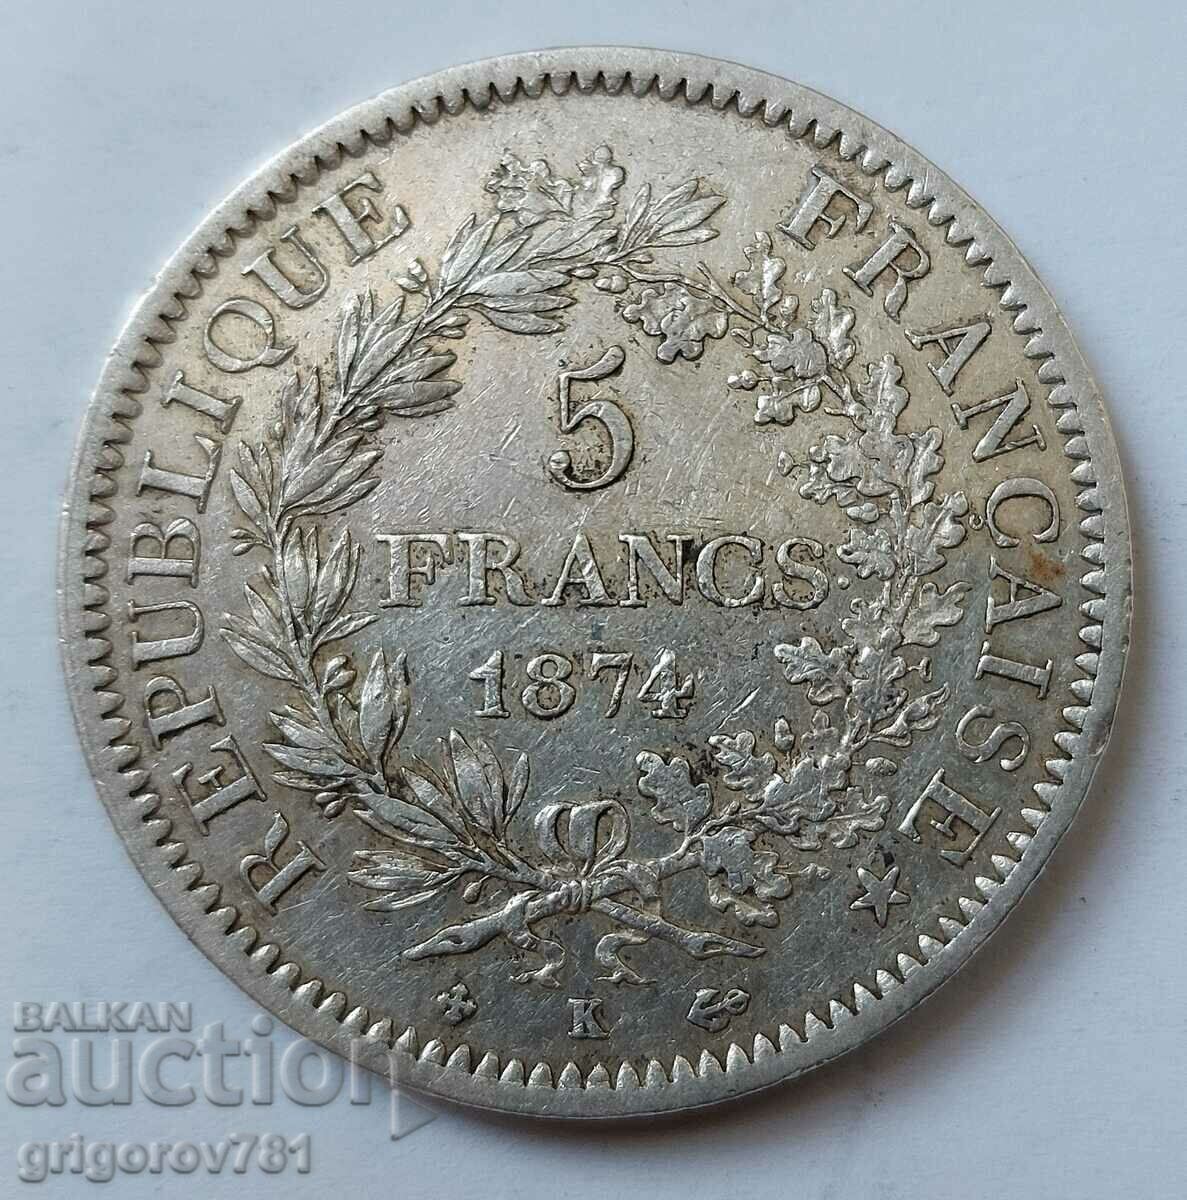 5 Φράγκα Ασήμι Γαλλία 1974K - Ασημένιο νόμισμα #86